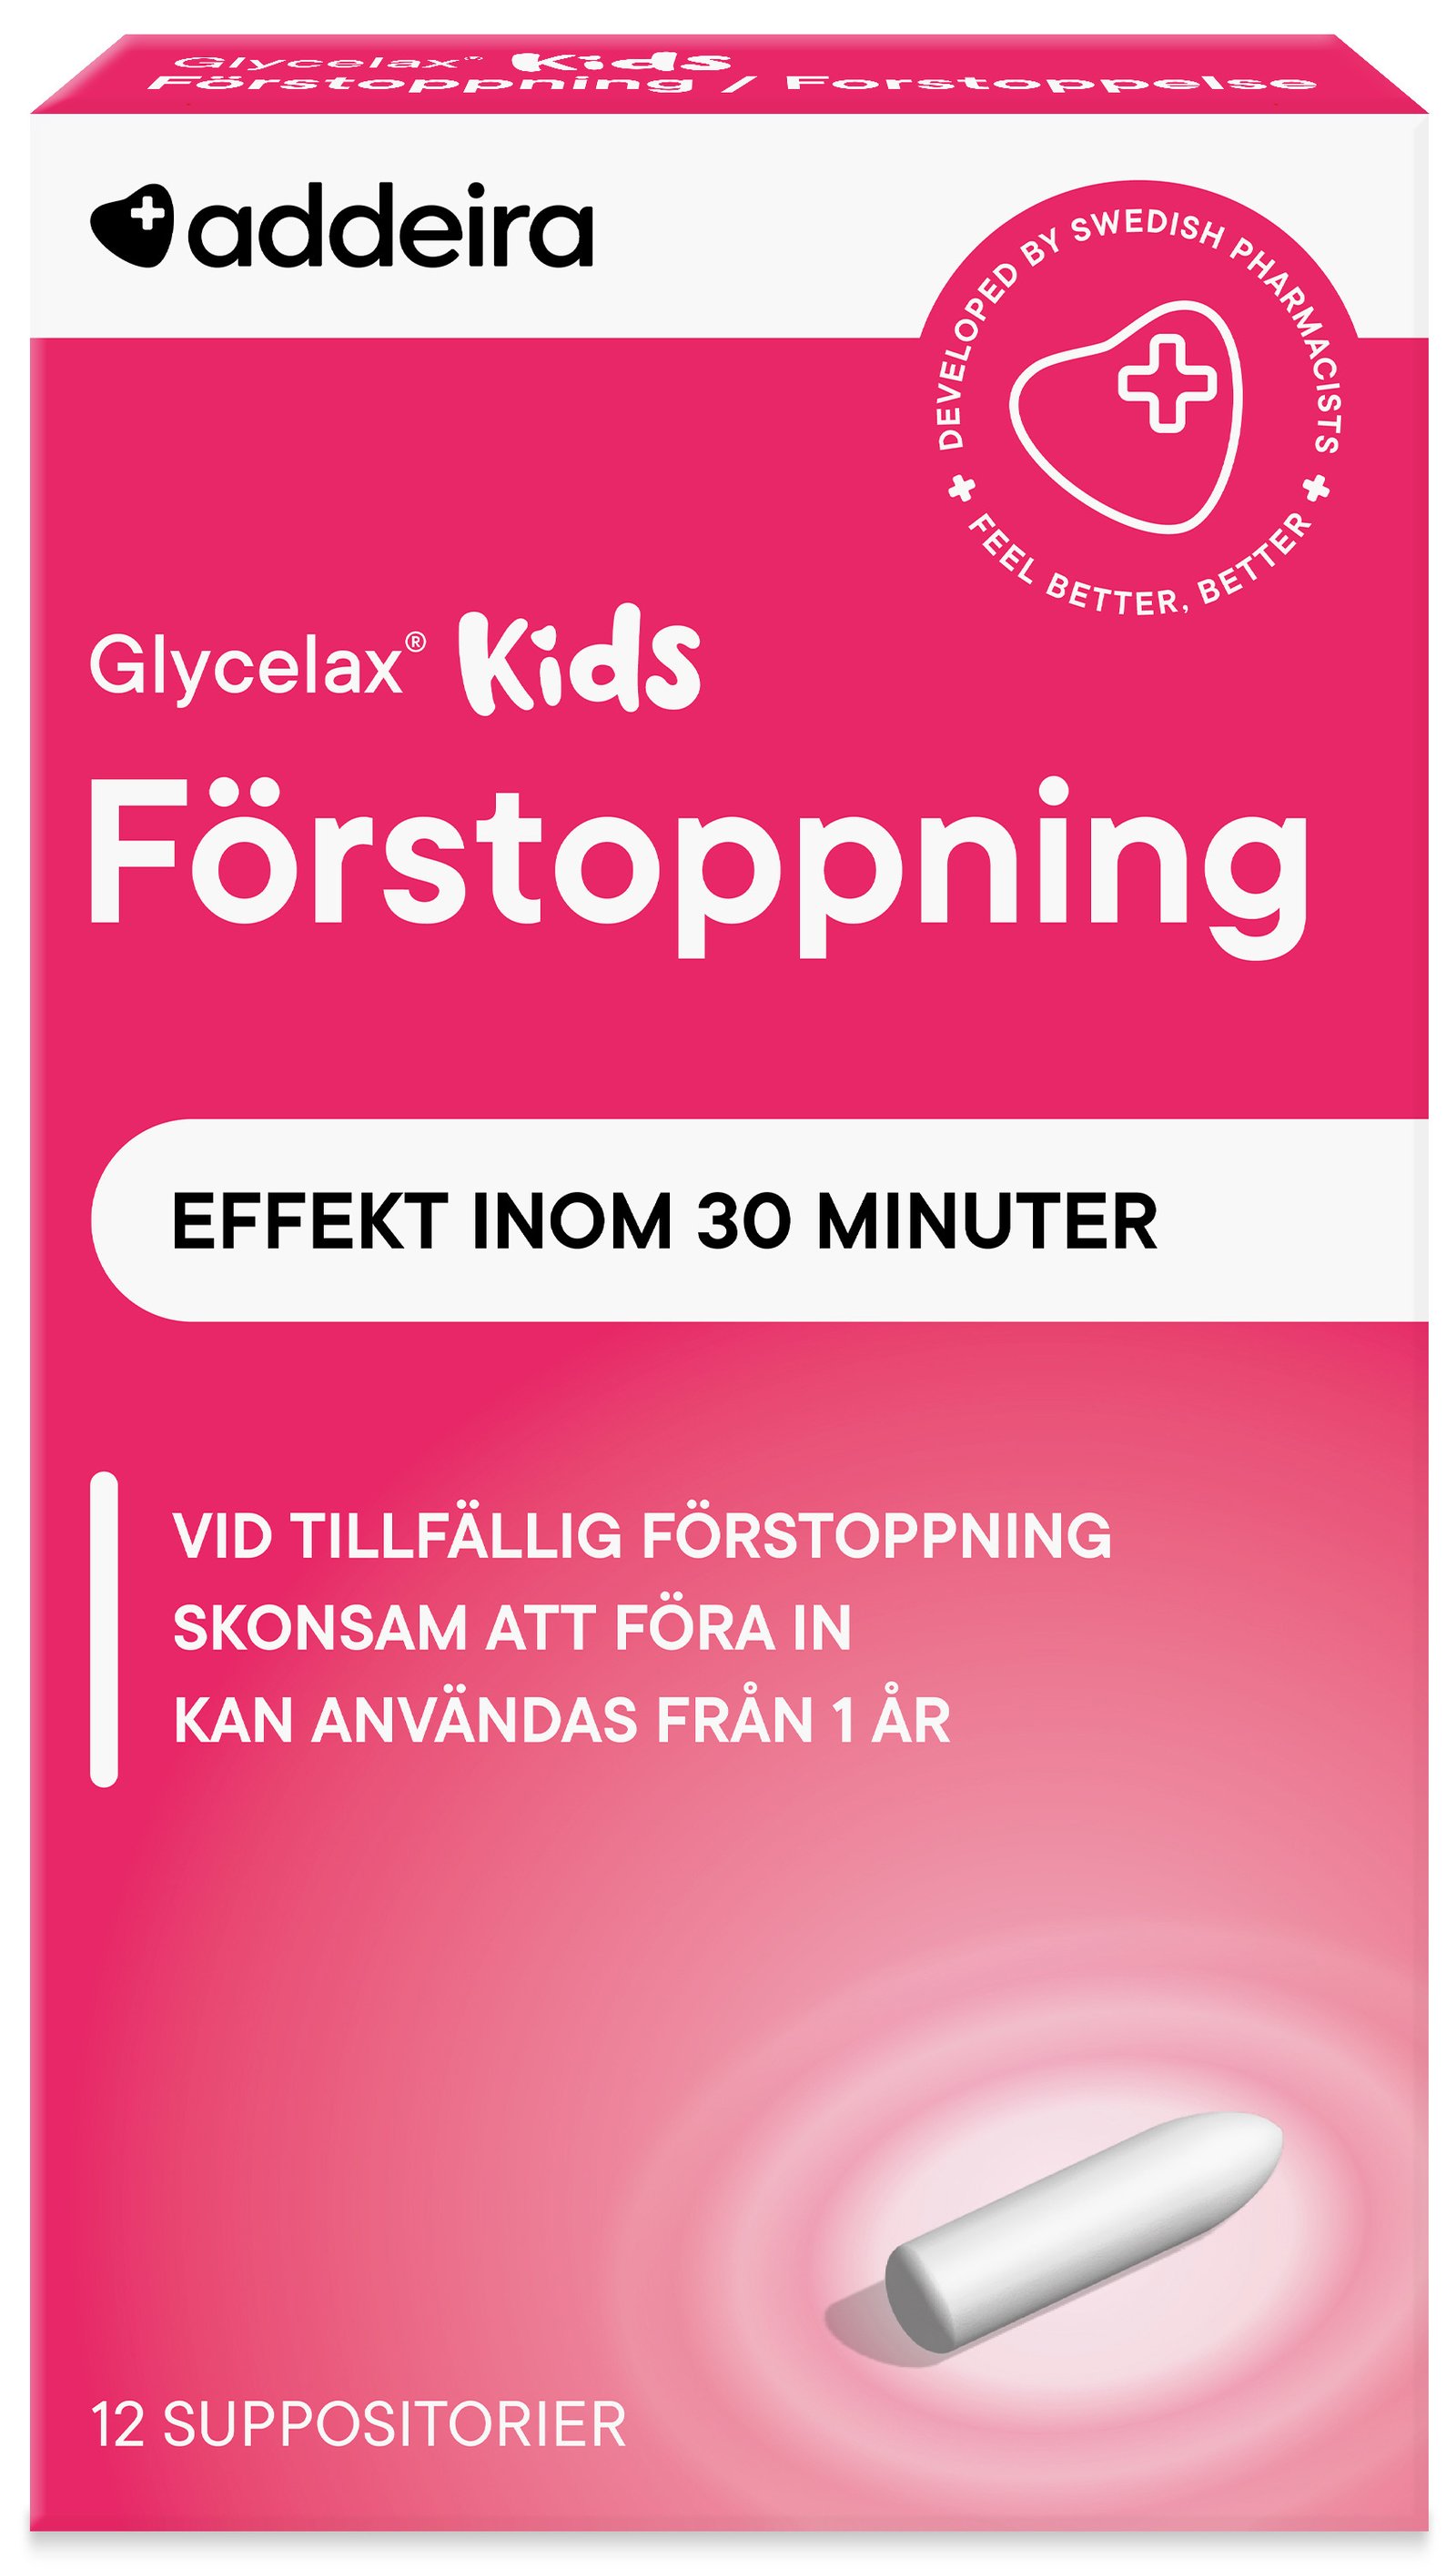 addeira Glycelax Kids Förstoppning 12 suppositorium